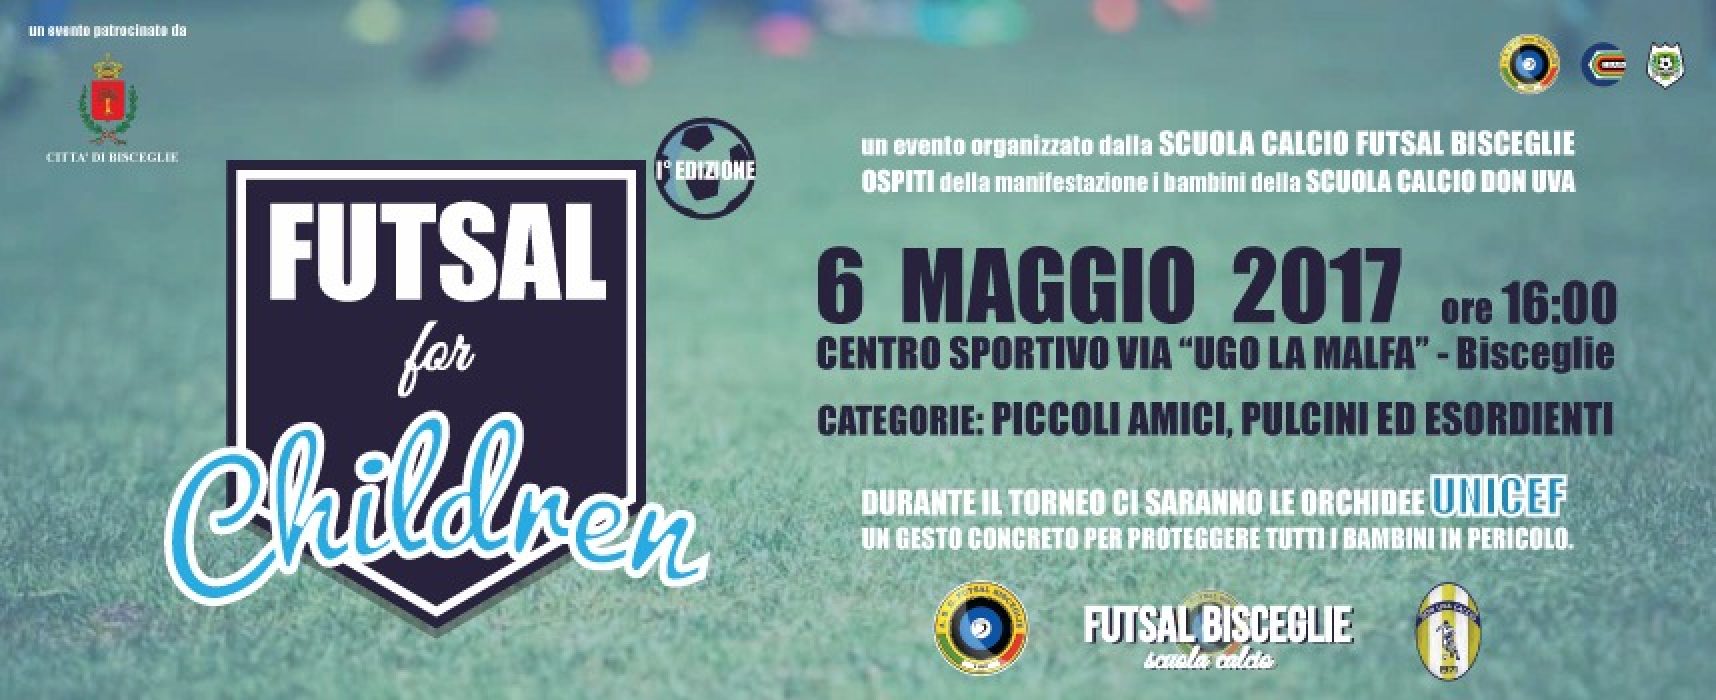 Futsal Bisceglie: domani prima edizione del torneo giovanile “Futsal for Children”